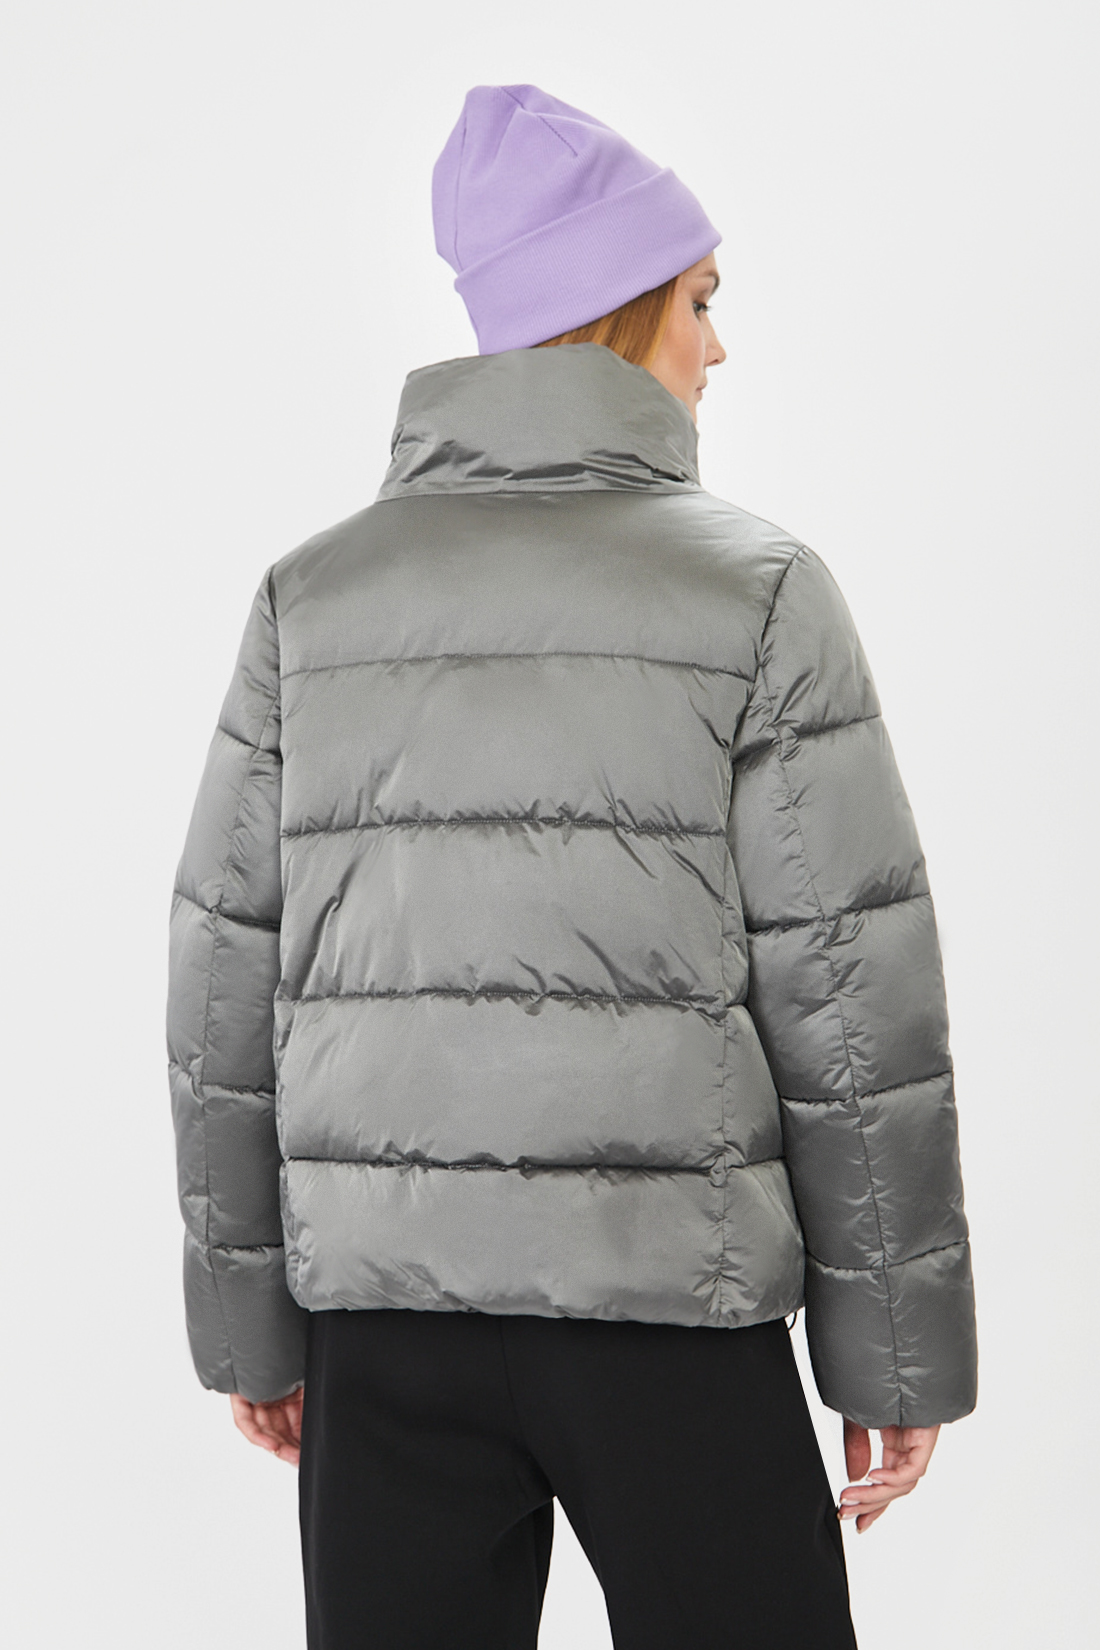 Куртка (Эко пух) (арт. baon B041514), размер L, цвет серый Куртка (Эко пух) (арт. baon B041514) - фото 2